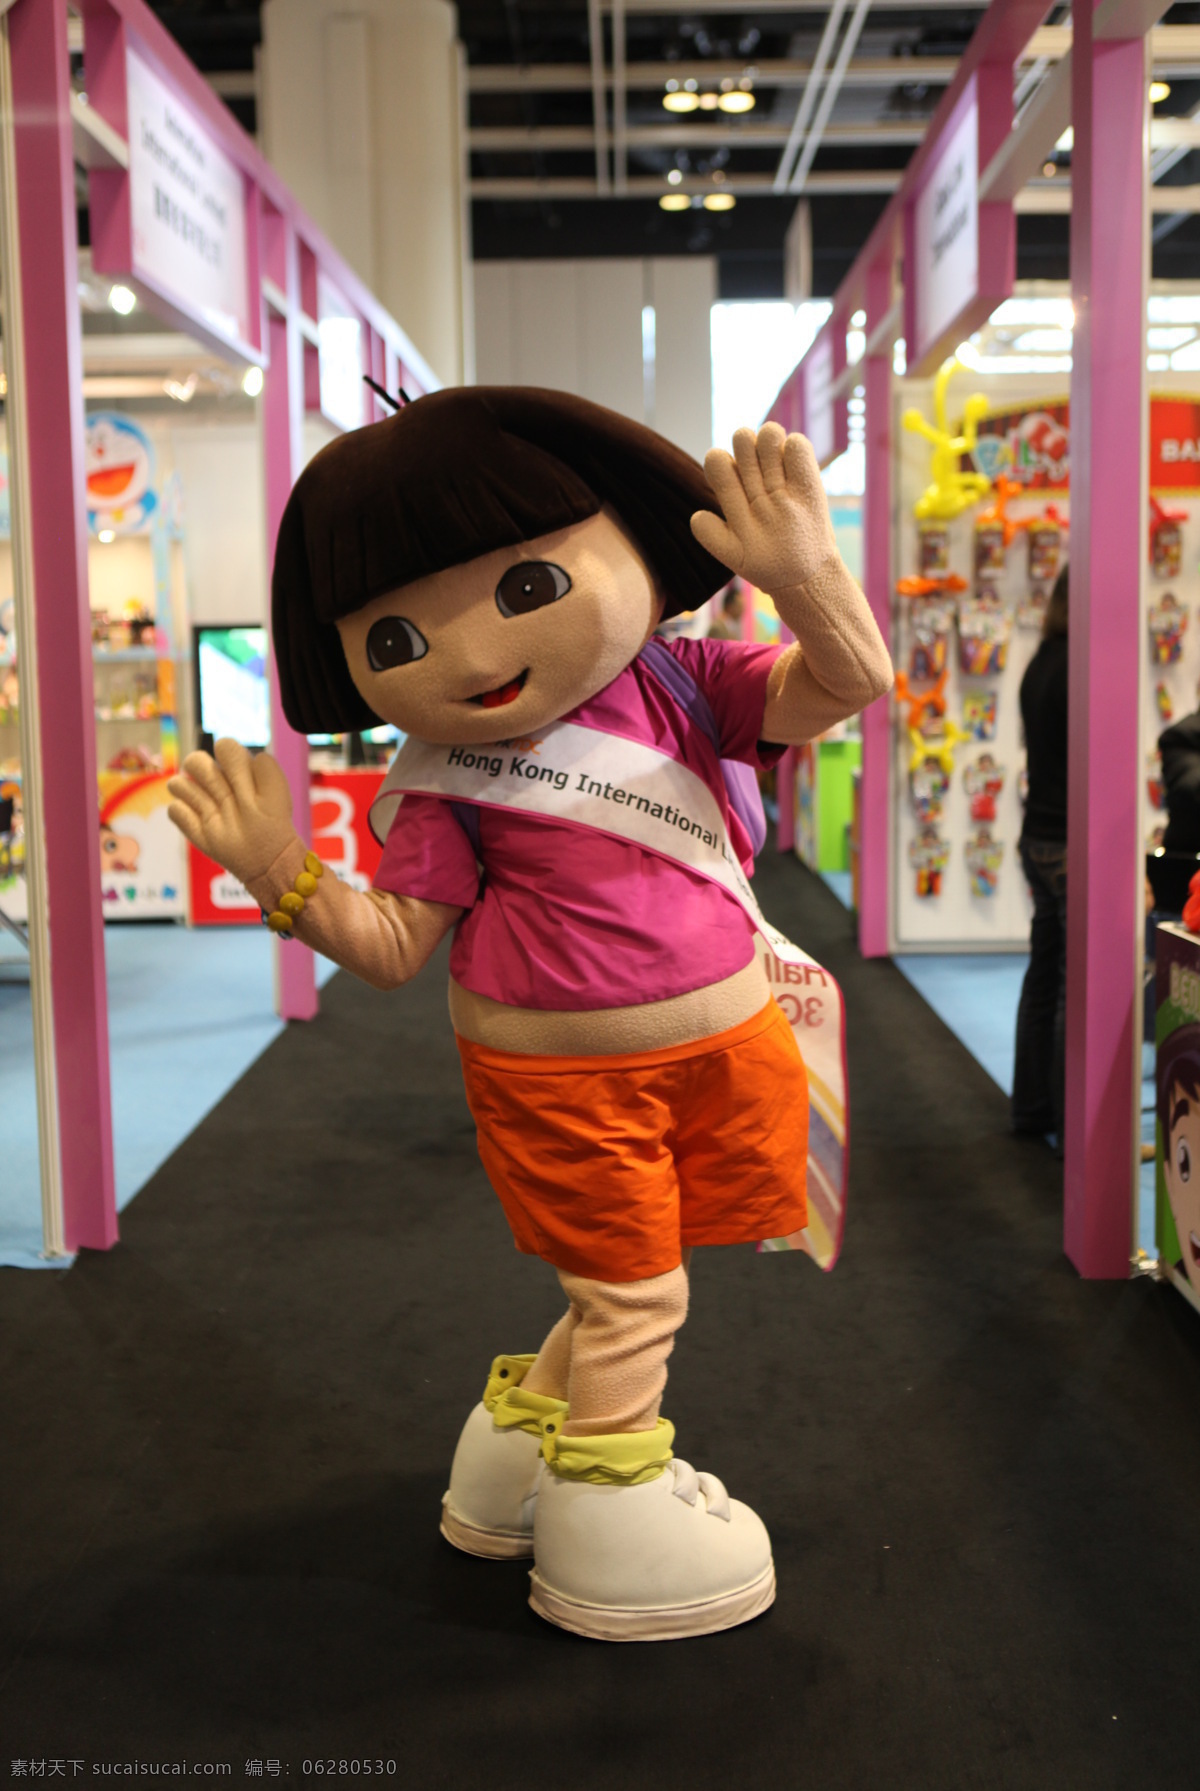 大尺寸 迪士尼 儿童乐园 国内旅游 卡通 旅游摄影 模型 展览 展示 展览展示 香港迪士尼 多啦 装饰素材 展示设计